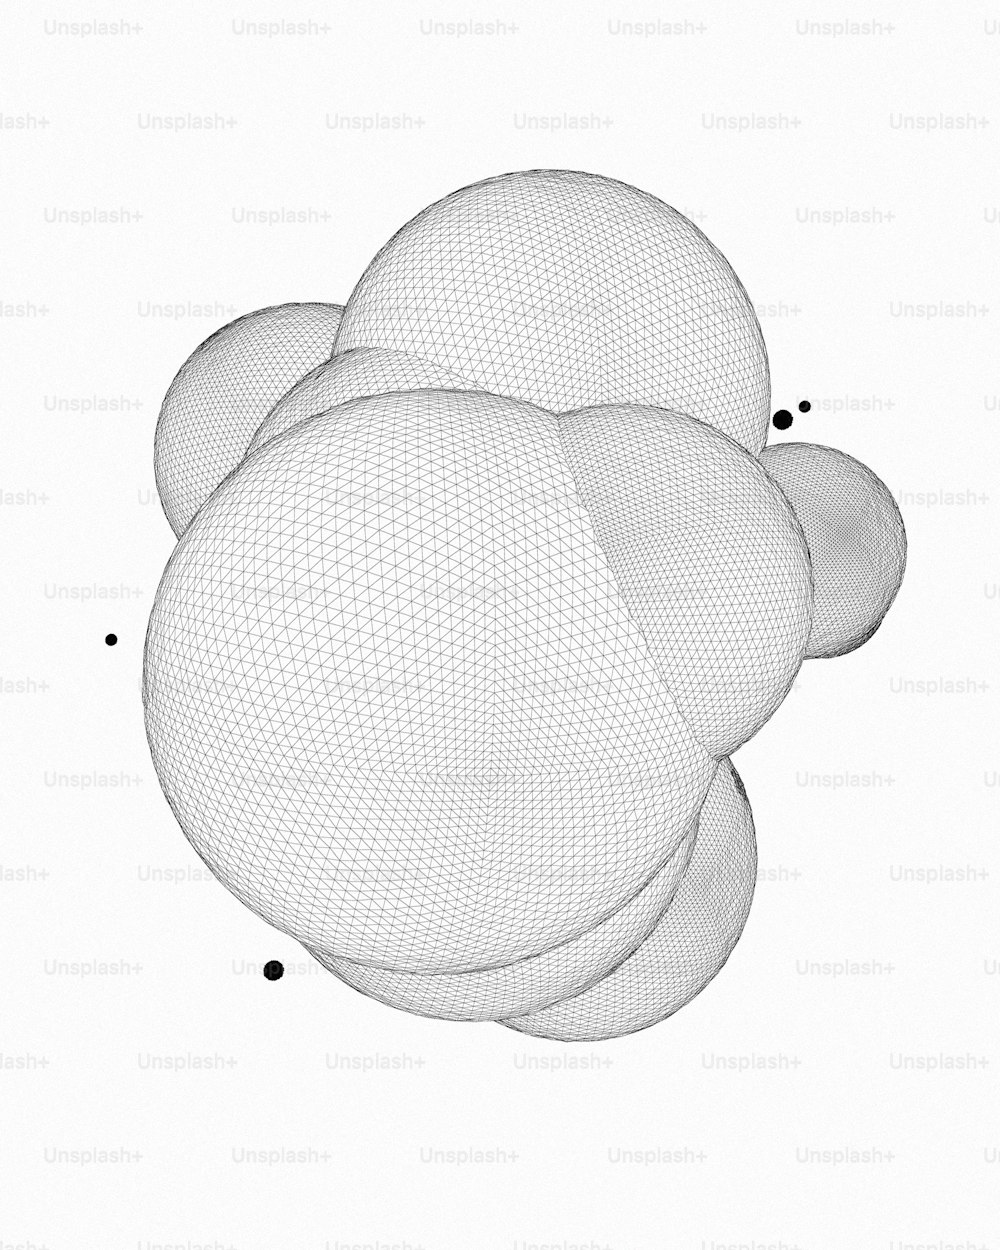 Un'immagine generata al computer di tre sfere